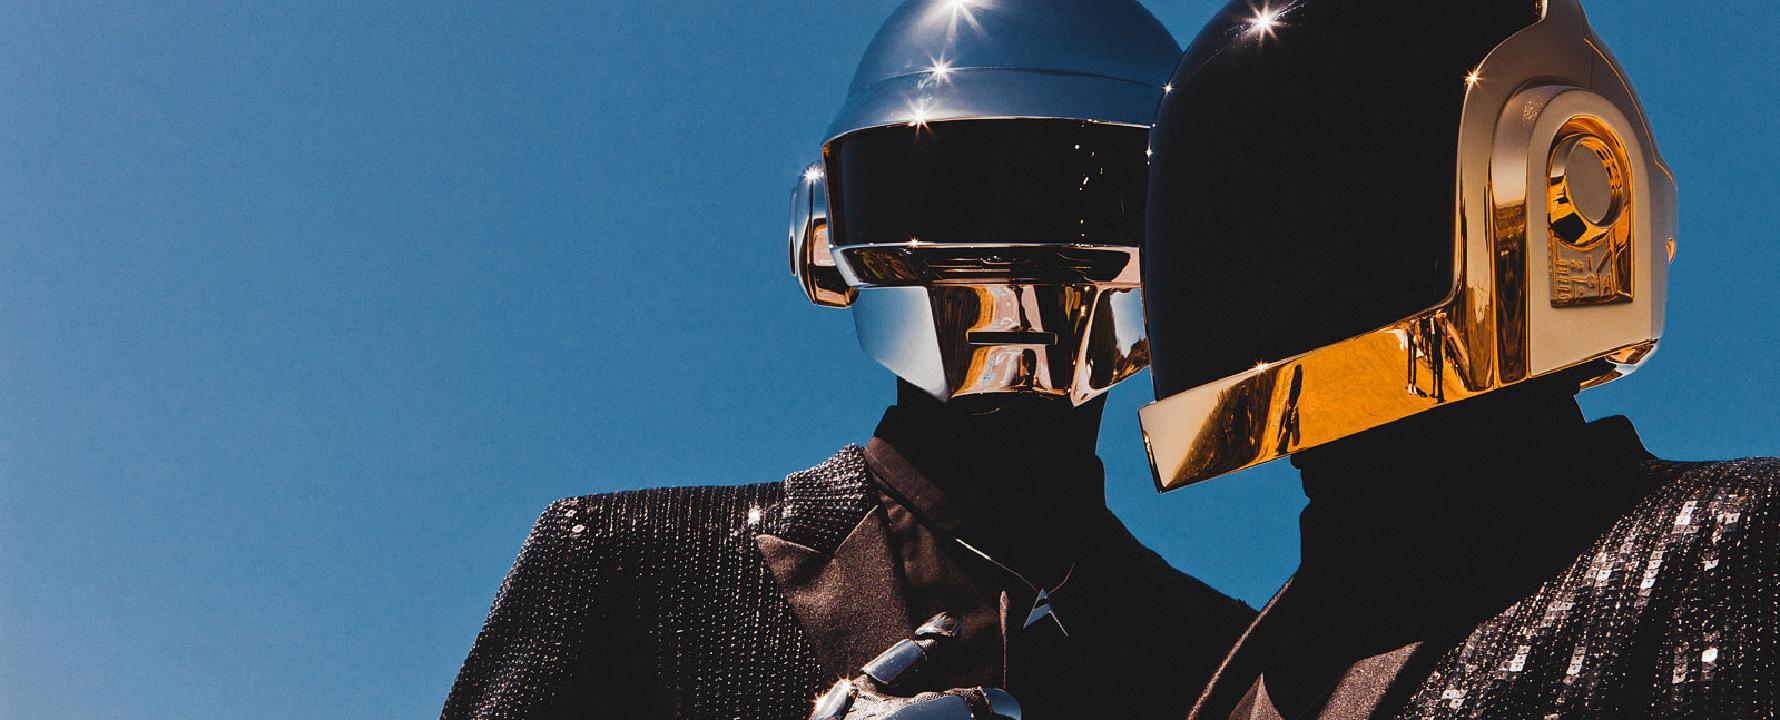 Promofoto von Daft Punk.